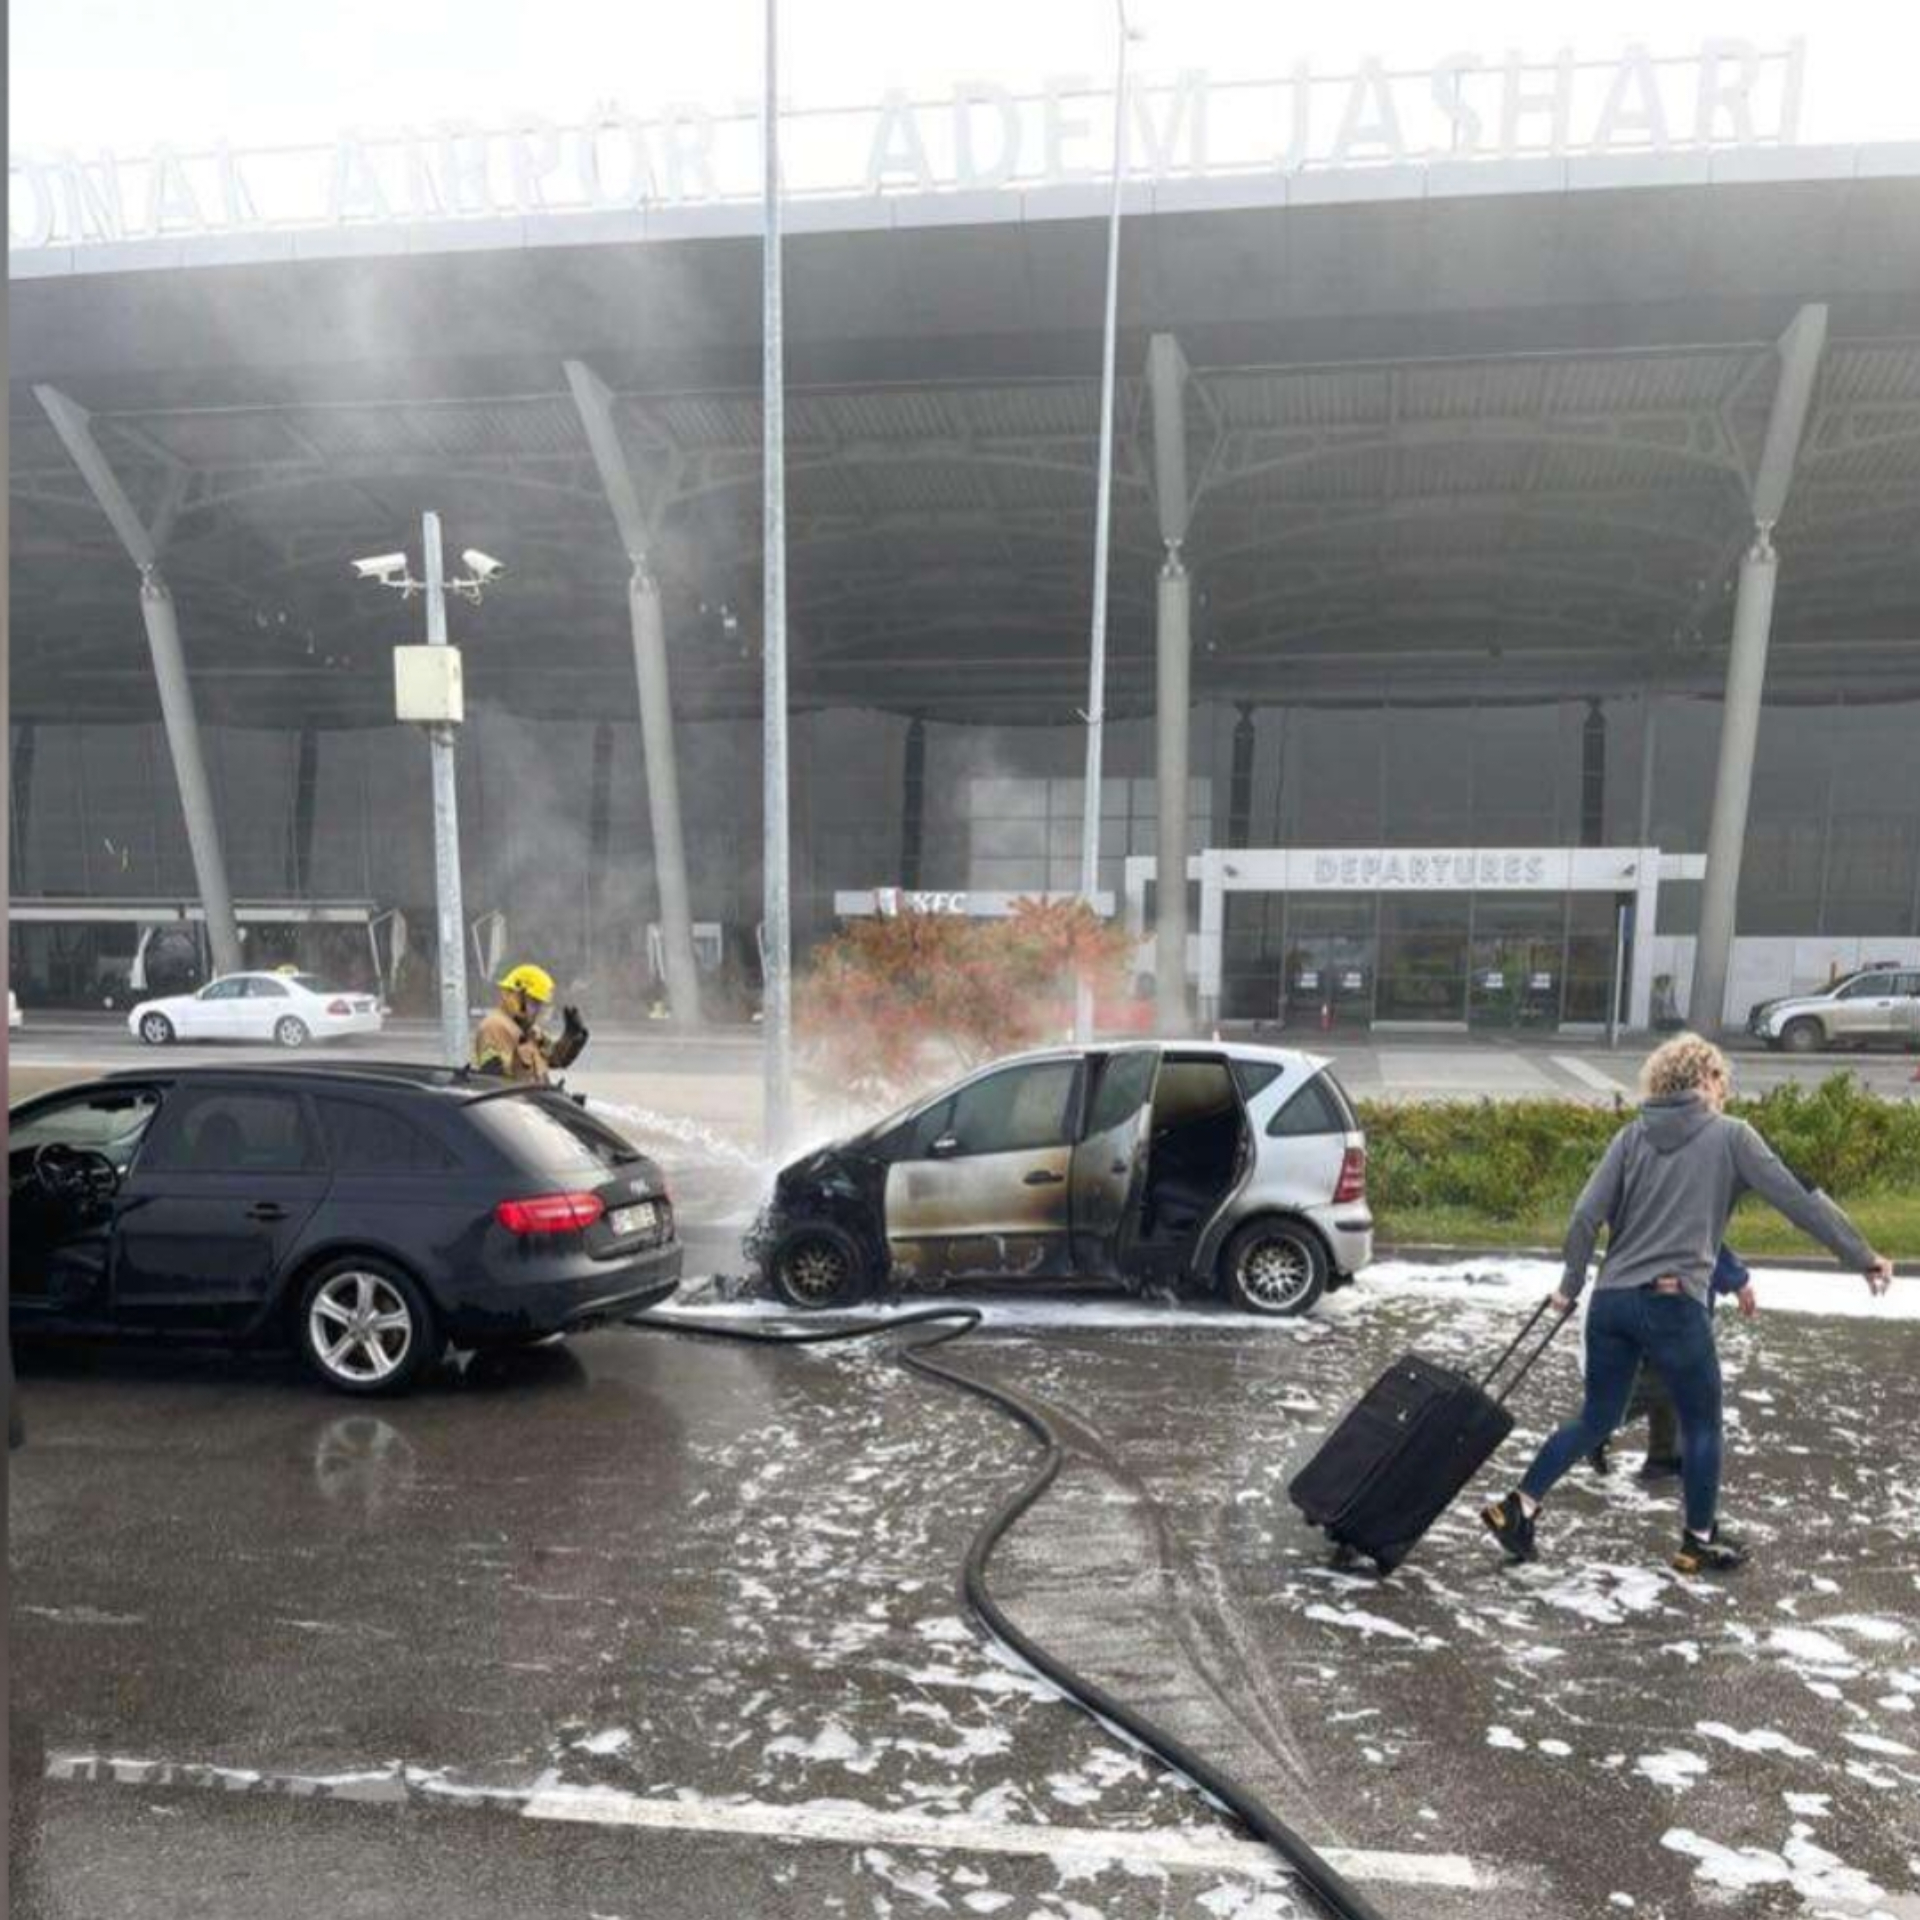 Digjen dy vetura në parkingun e Aeroportit të Prishtinës